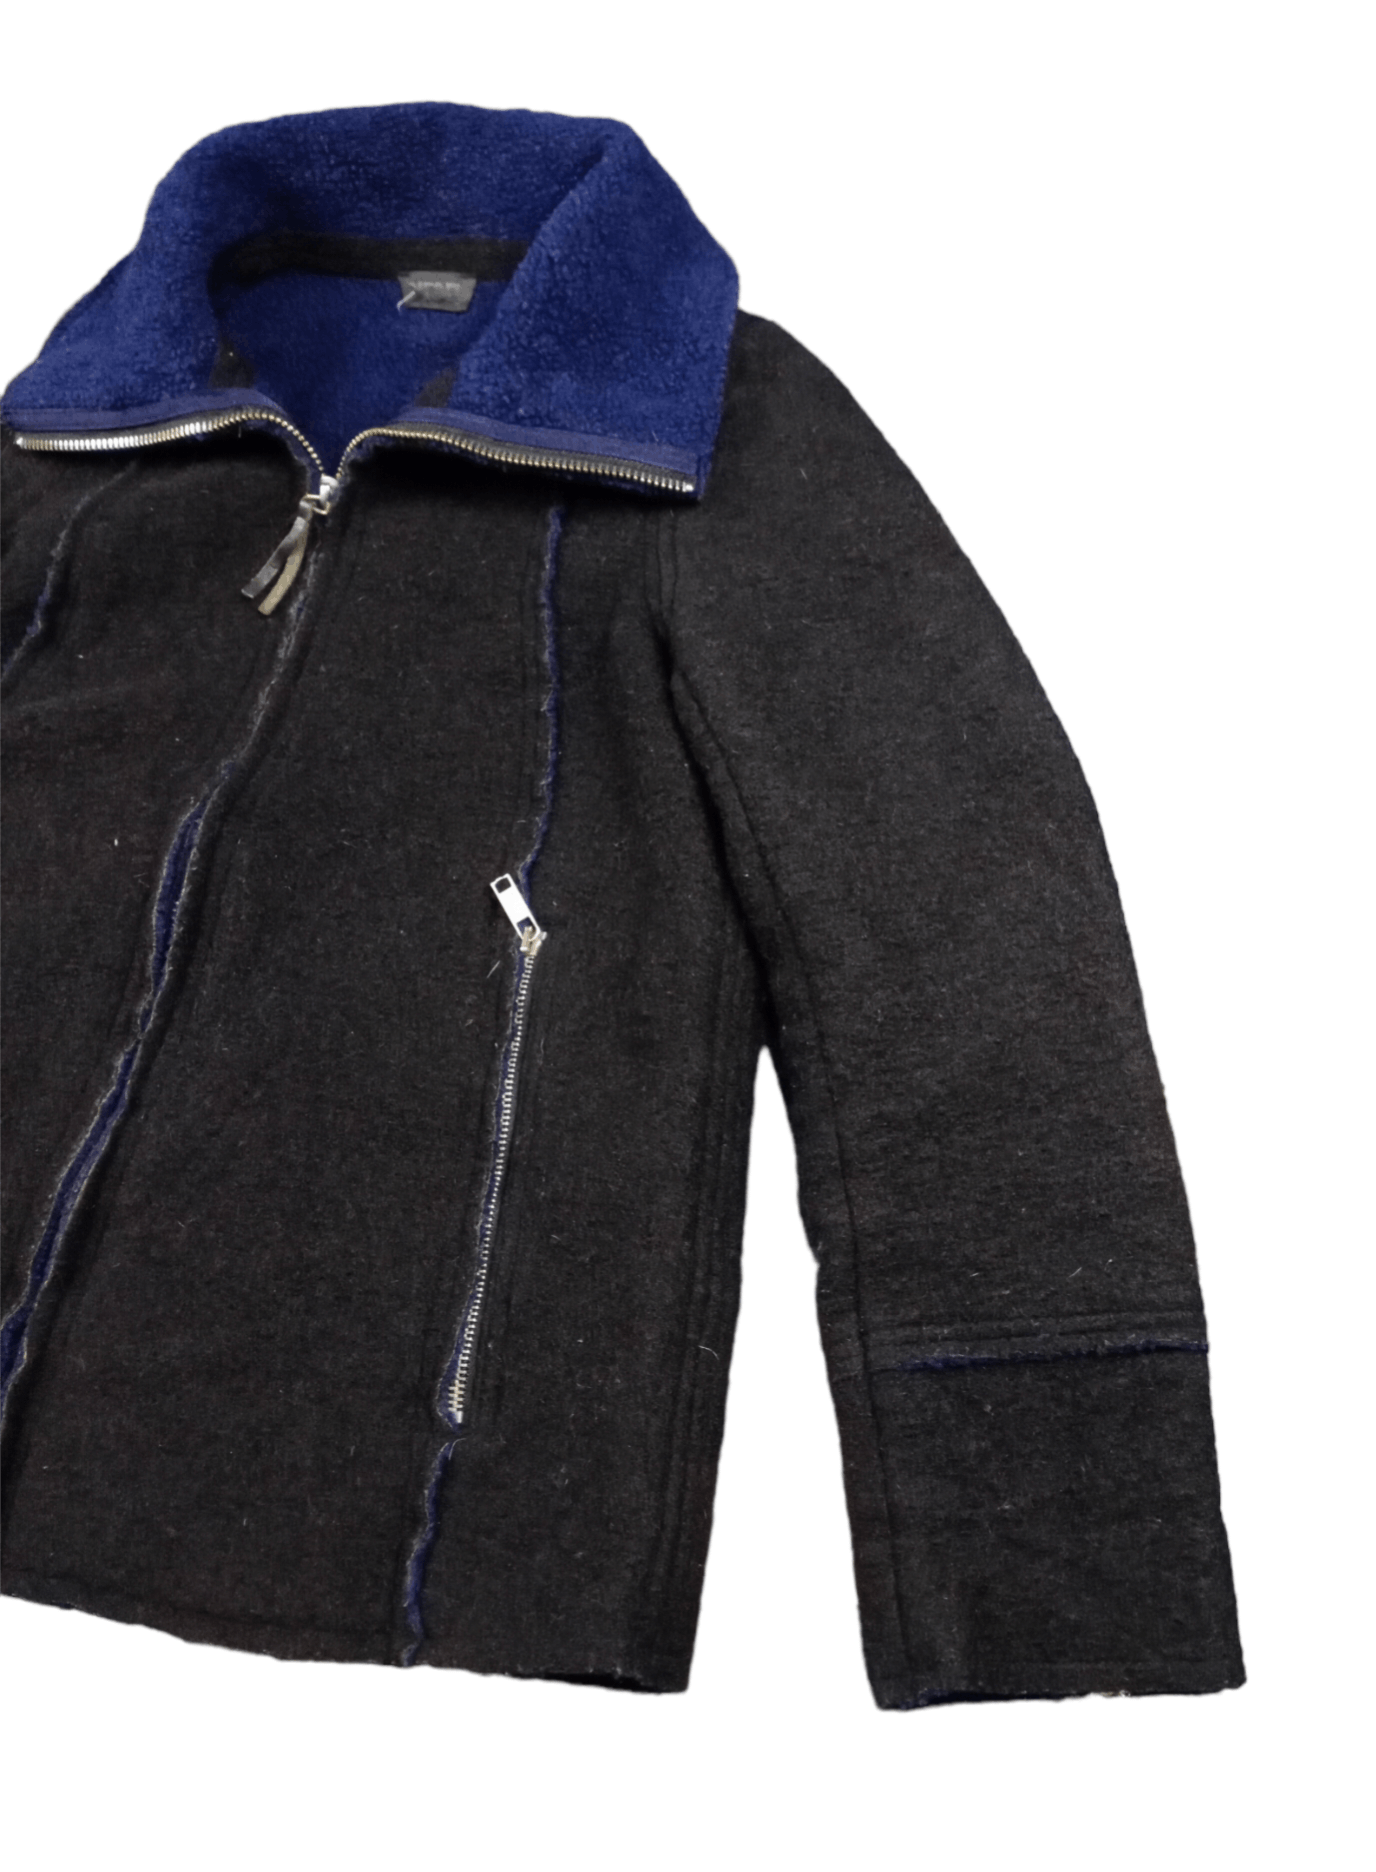 💥RARE💥Vintage Diesel Wool Fleece Zipper Jacket - 2